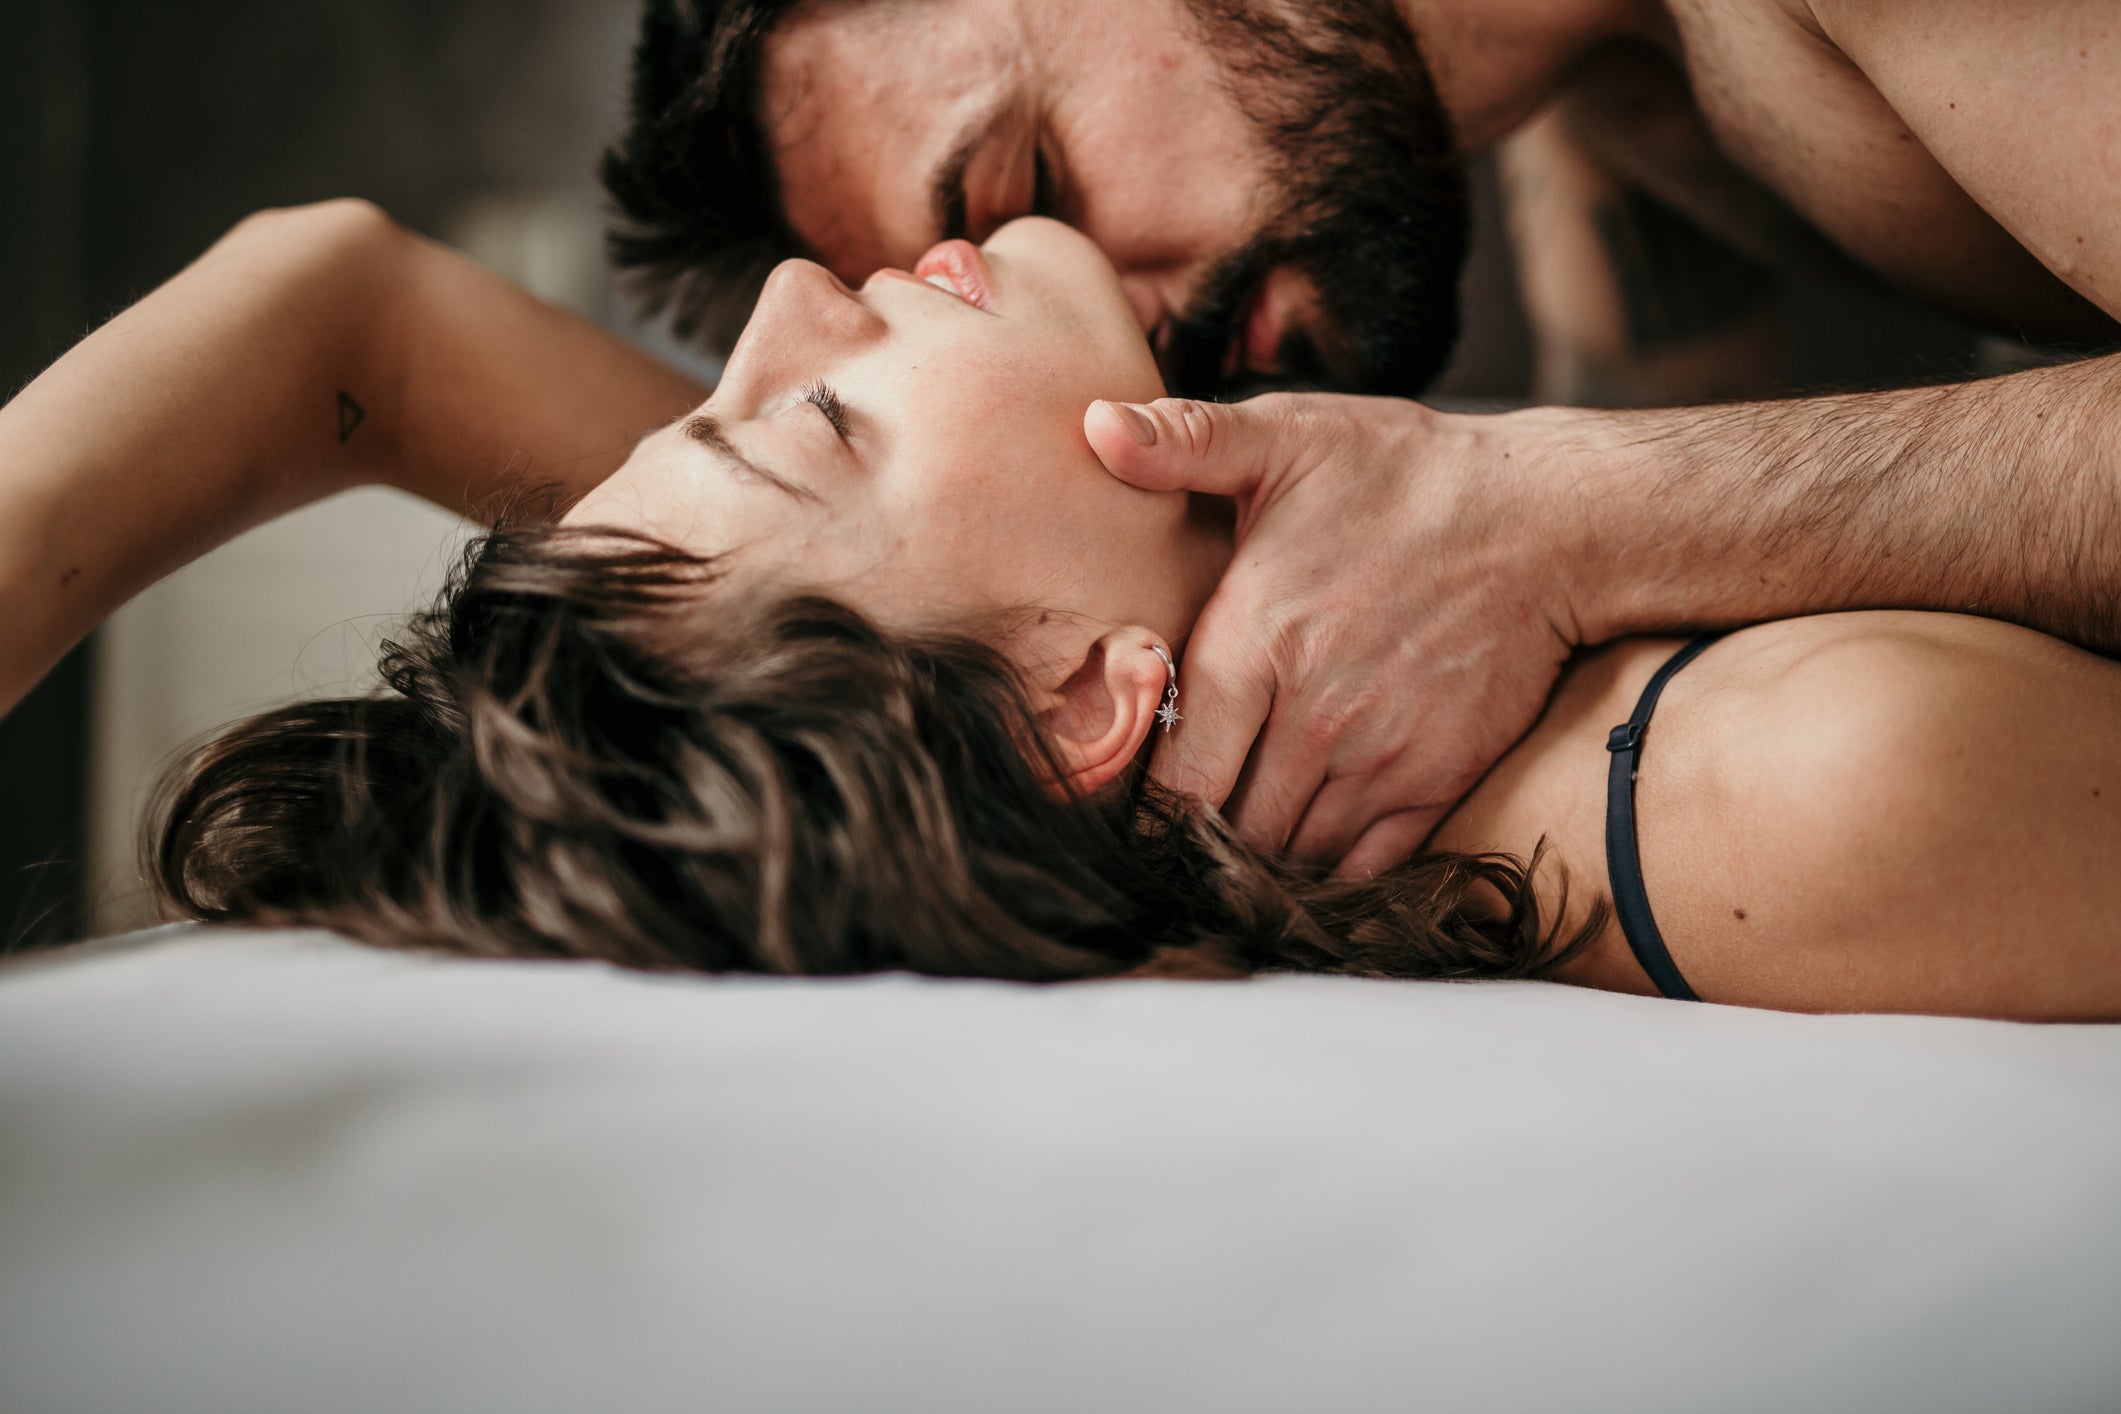 Un homme allongé sur une femme dans un lit dans une étreinte passionnée. 